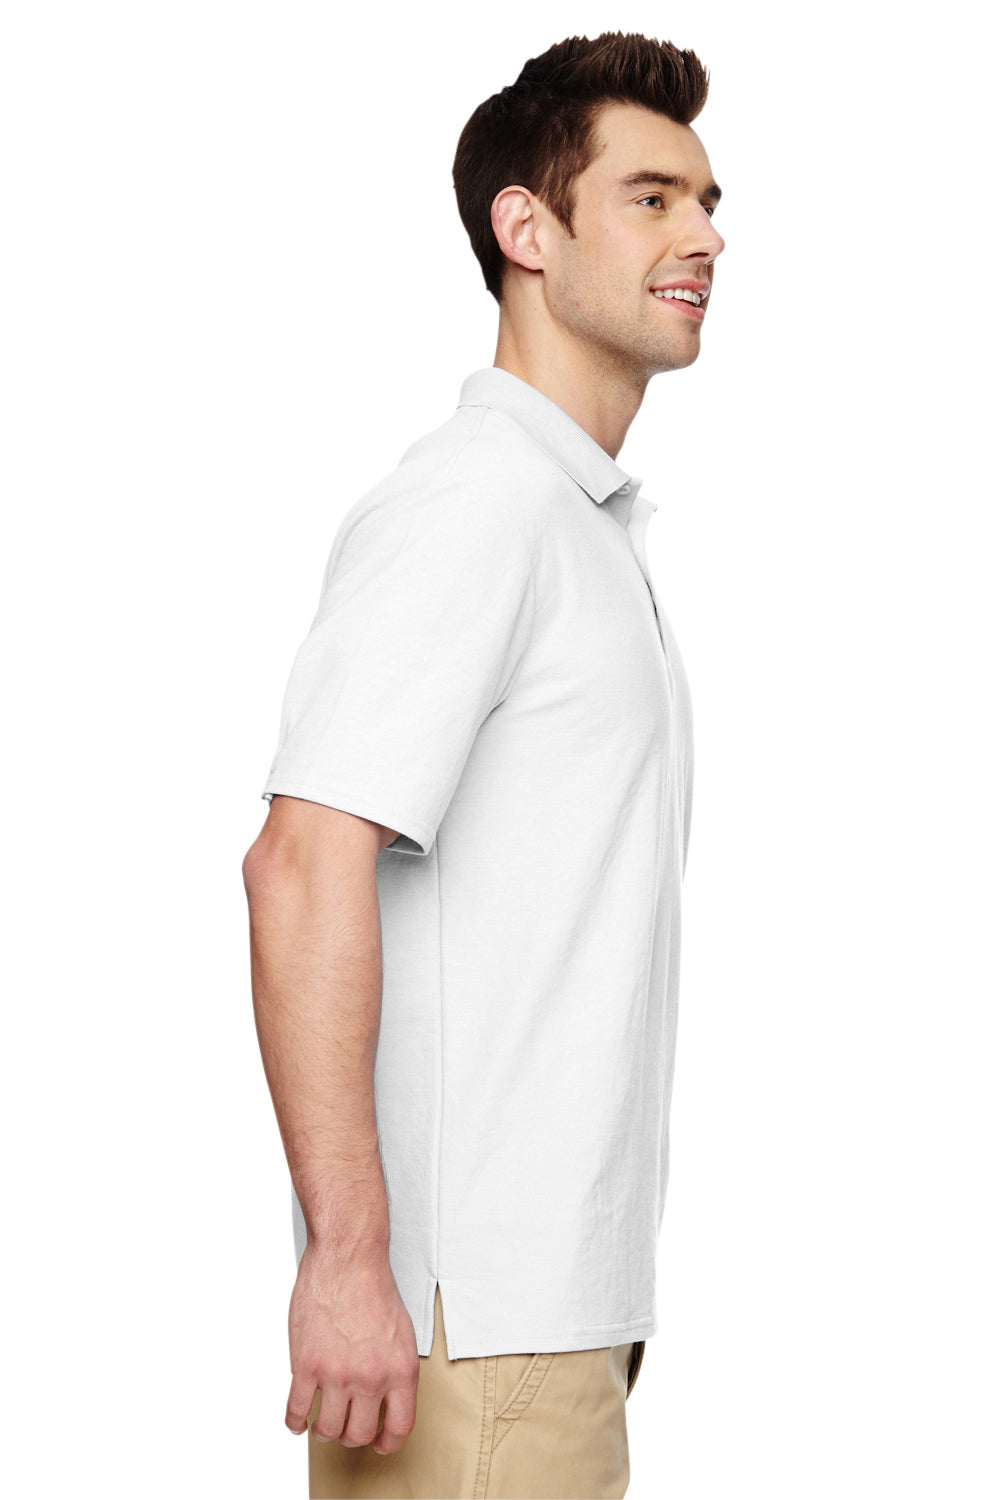 Gildan G728 Mens DryBlend Moisture Wicking Short Sleeve Polo Shirt White Side